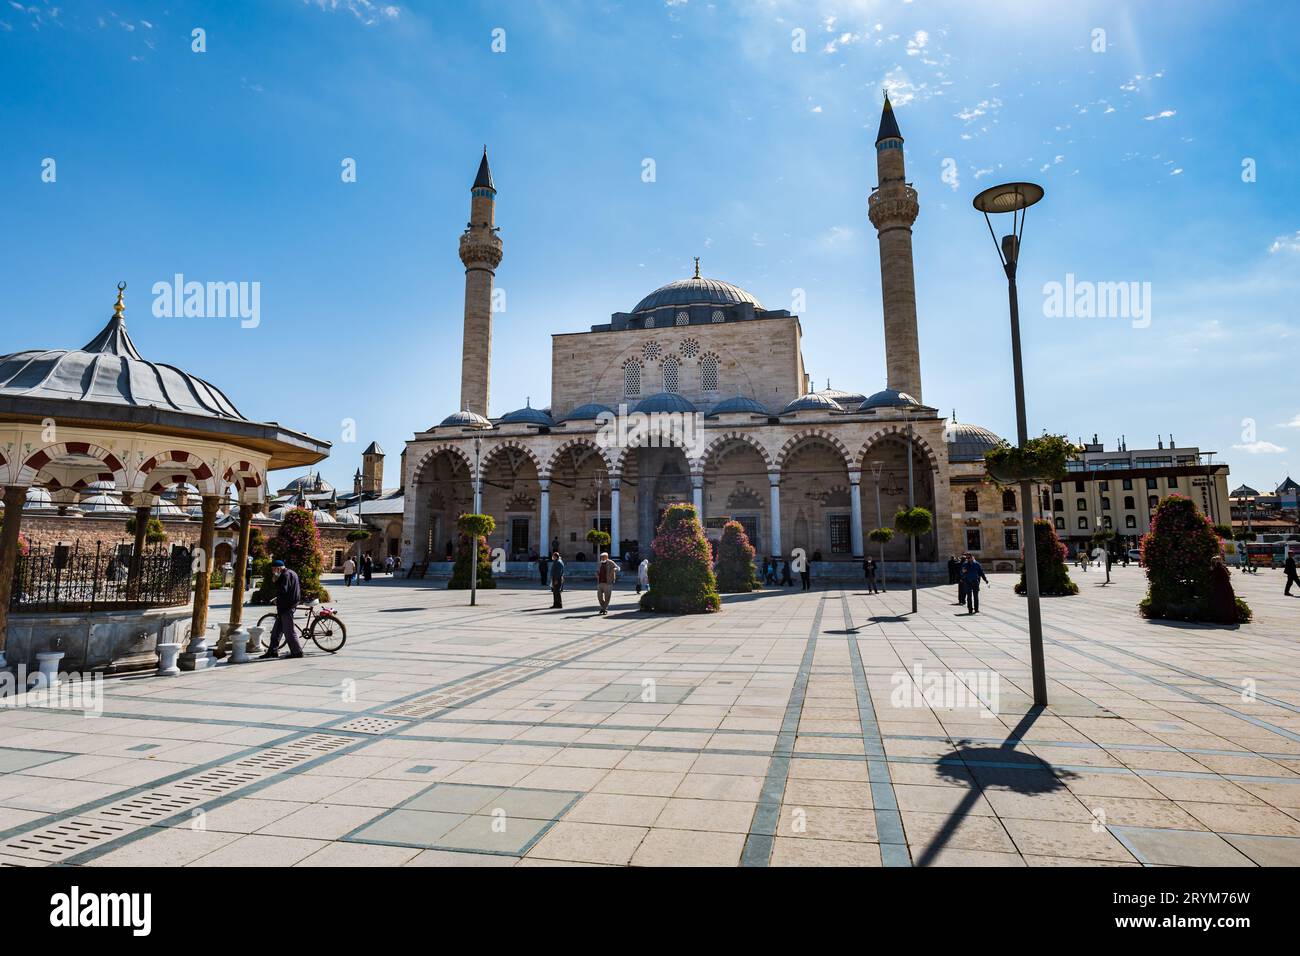 Konya, Türkei - 09.24.2021: Stadtplatz Konya mit Selimiye-Moschee. Konya ist ein Wallfahrtsort für Sufis, das sich auf das Grab des Mevlana-Ordens Rumi konzentriert. Hochwertige Fotos Stockfoto